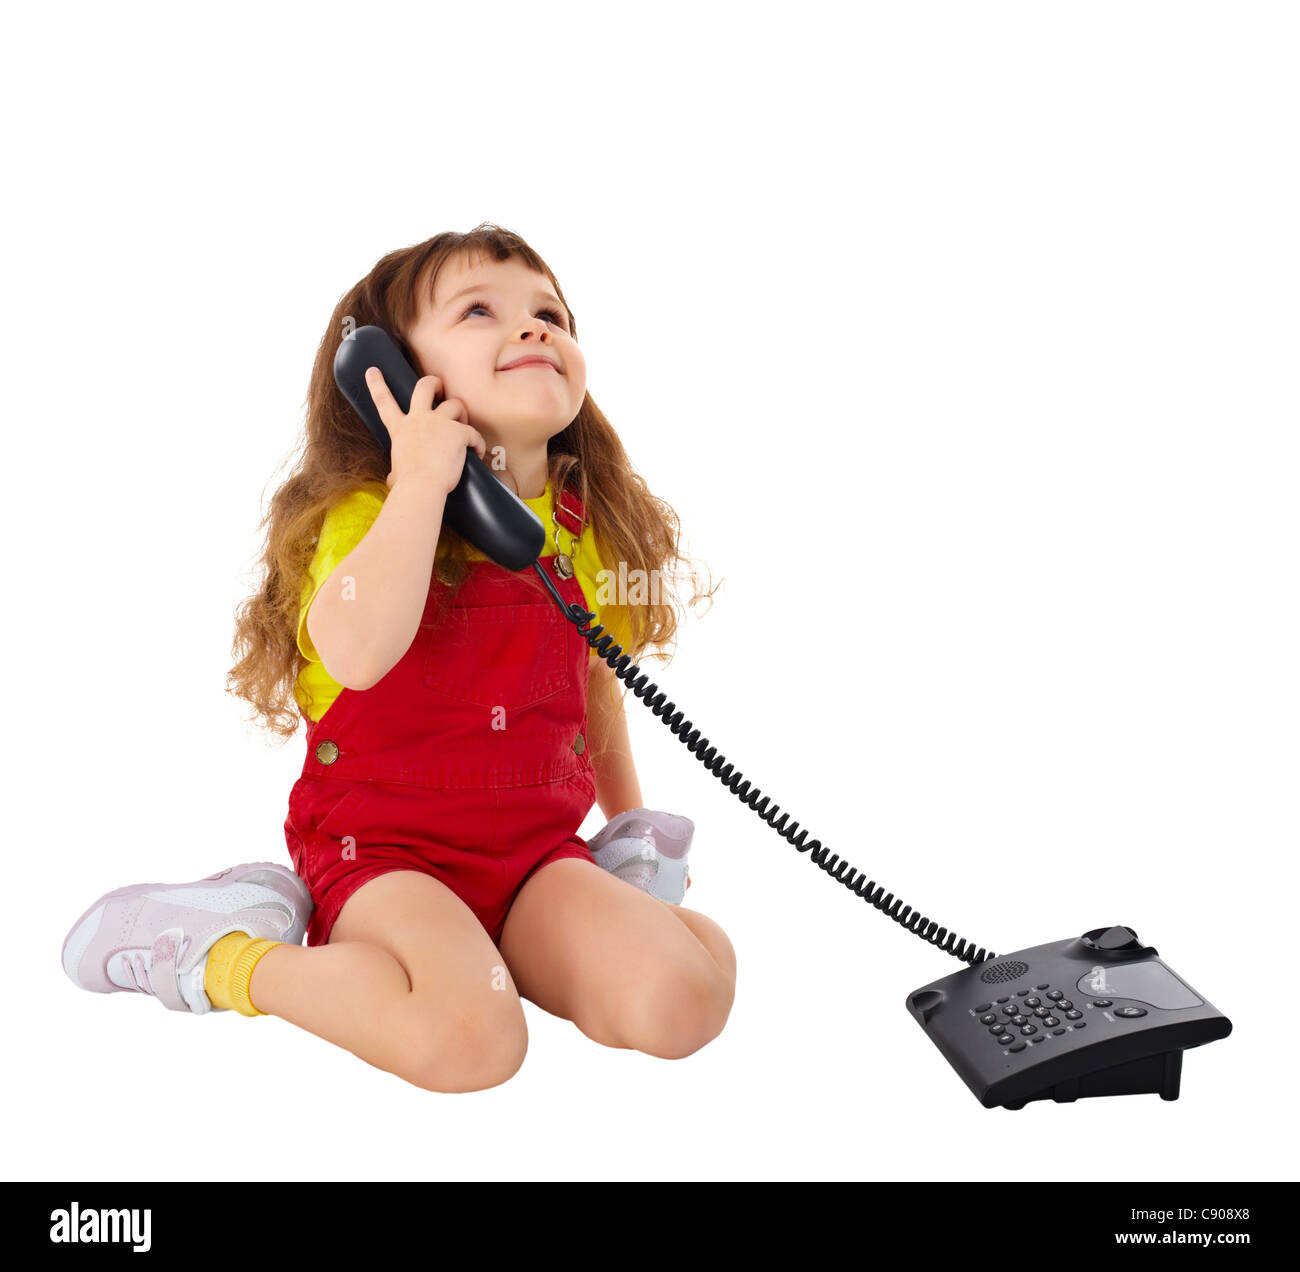 Звонок другу звук. Ребенок с телефонной трубкой. Девочка разговаривает по телефону. Девочка с телефоном. Маленькая девочка с телефоном.